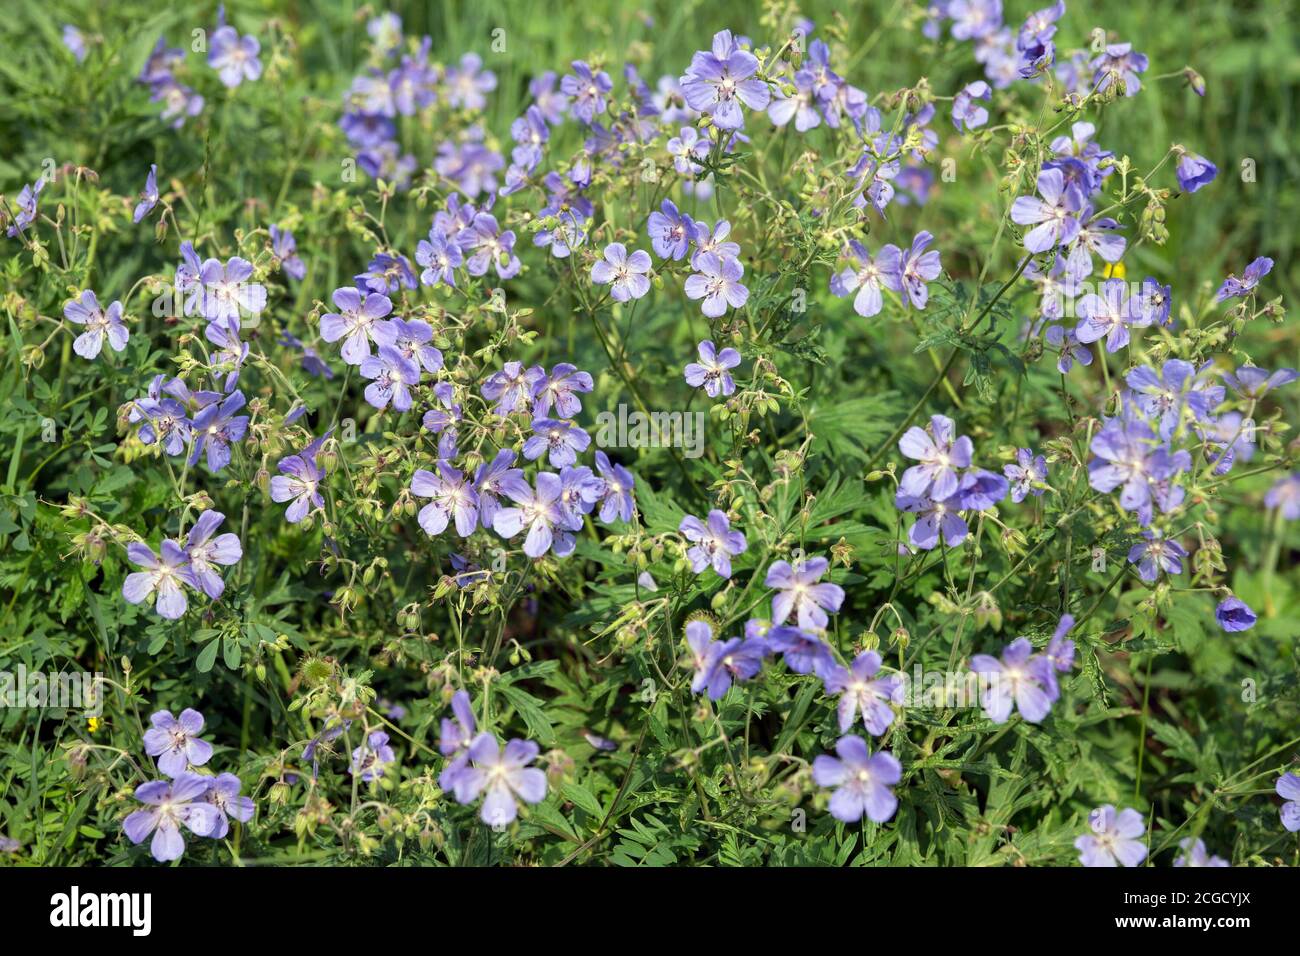 Viele blaue Blüten von Wiesenschnabel {Geranium pratense} blühen auf einer grünen Wiese. Stockfoto